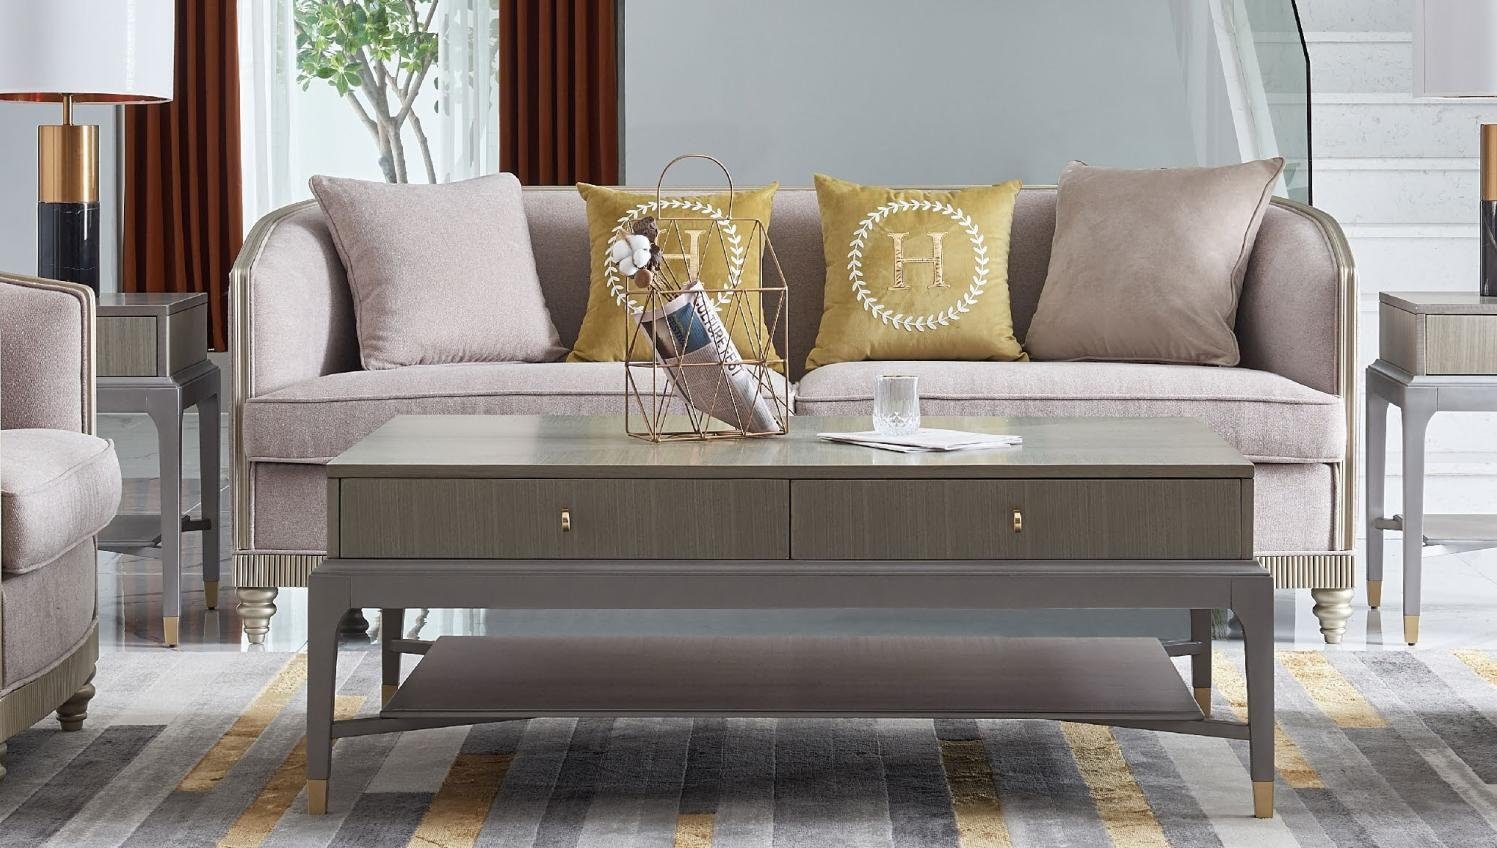 JVmoebel Sofa Textil Dreisitzer moderne beige Couch 3-er Polstermöbel Neu, Made in Europe